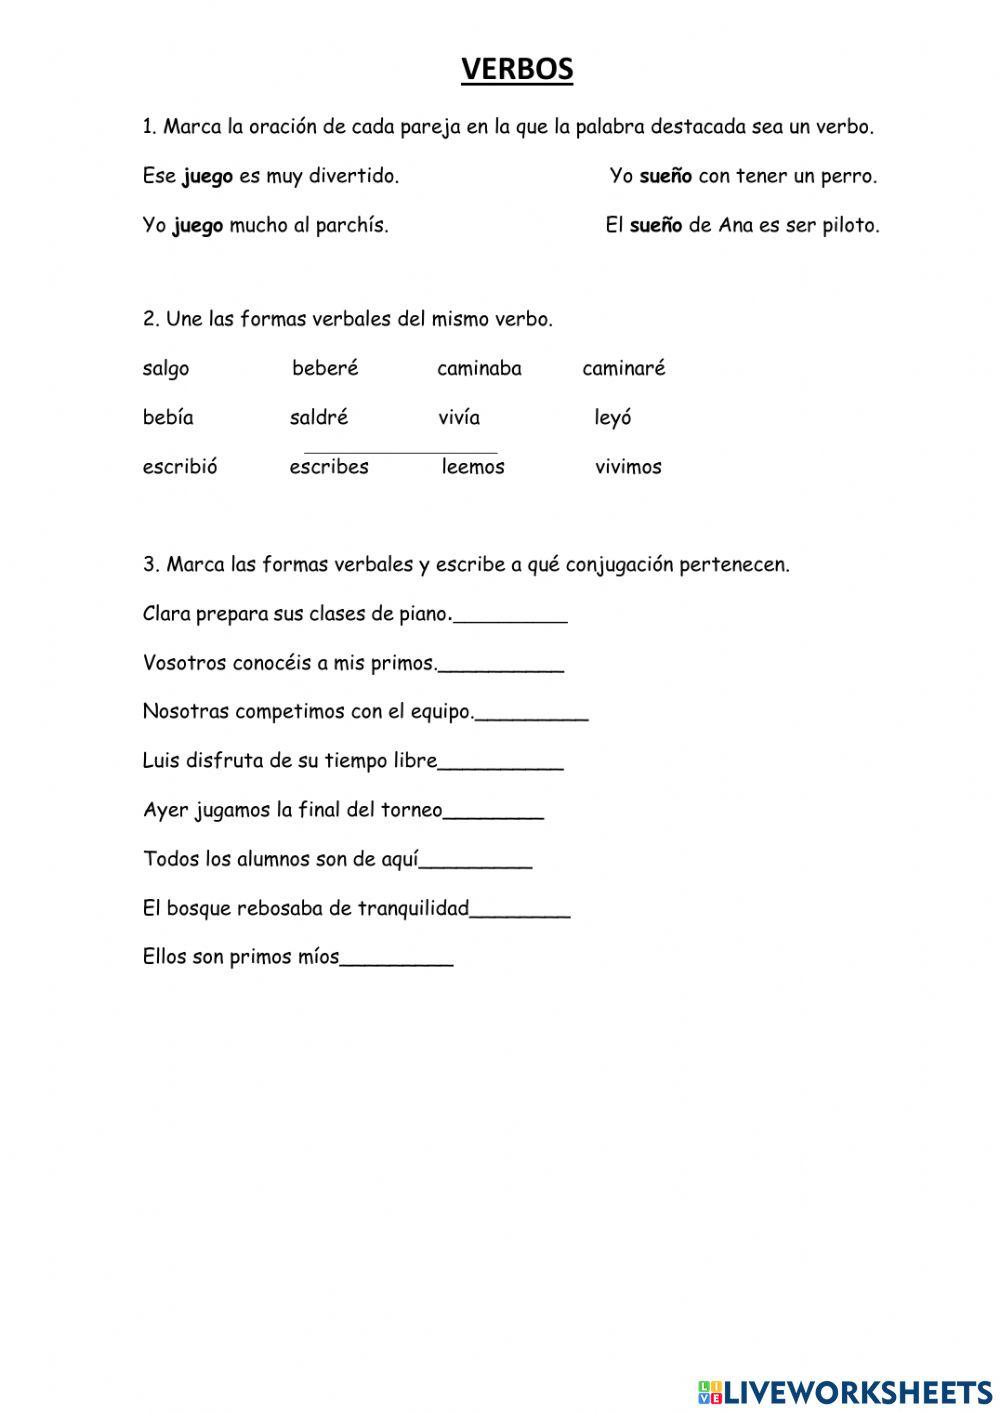 Verbos conjugaciones worksheet | Live Worksheets